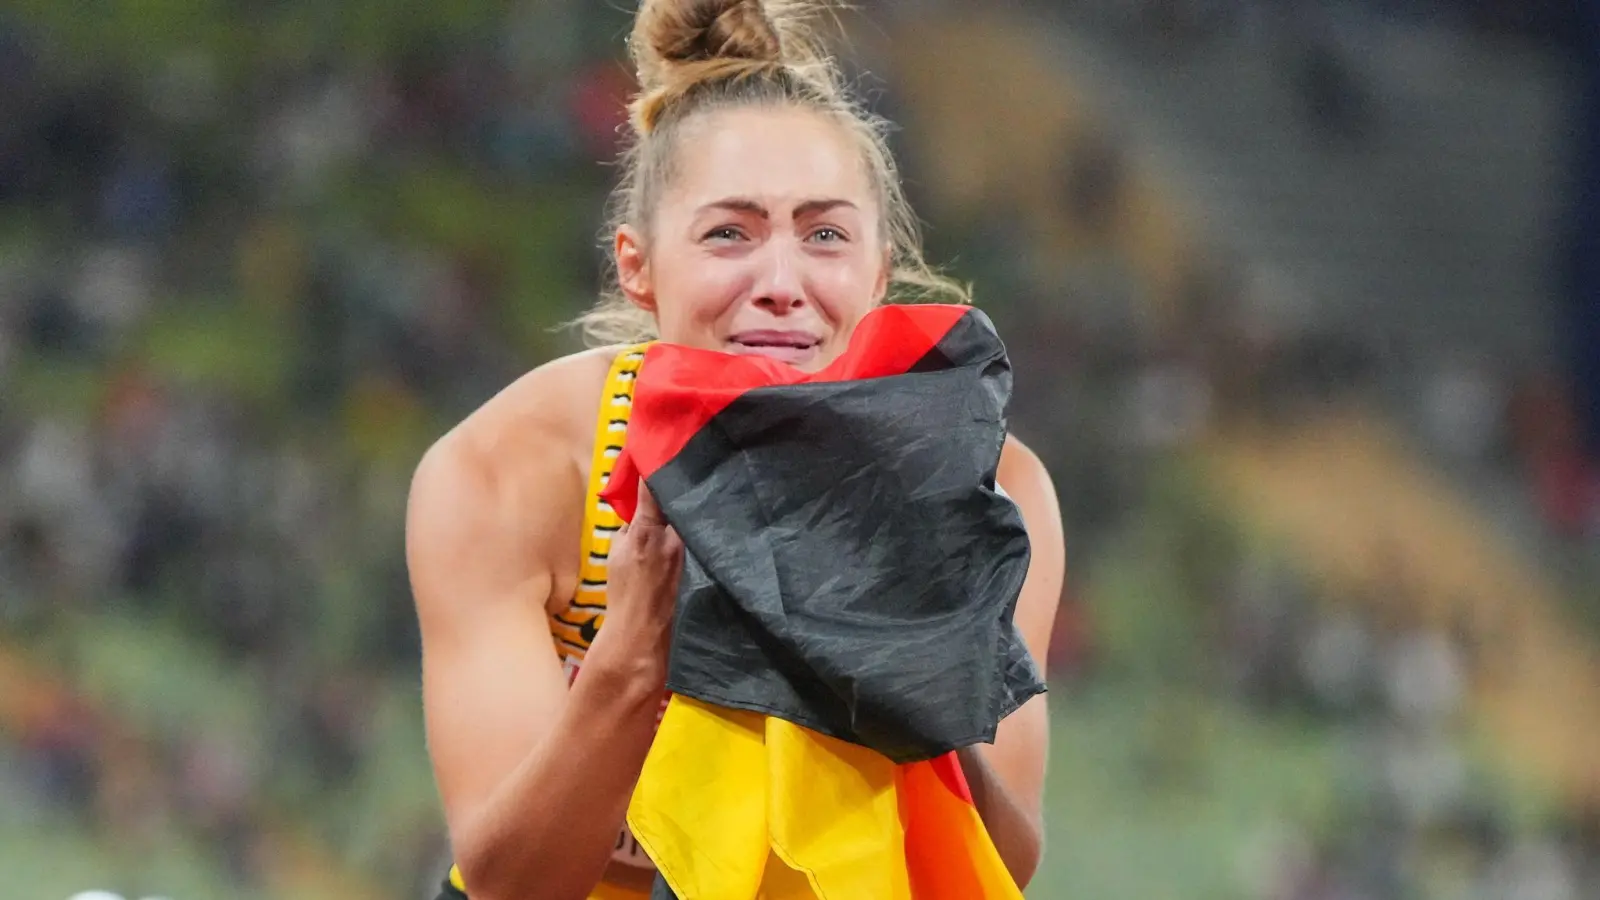 Sprintet über 100 Meter zum Sieg: Gina Lückenkemper jubelt nach dem Wettkampf. (Foto: Sören Stache/dpa)